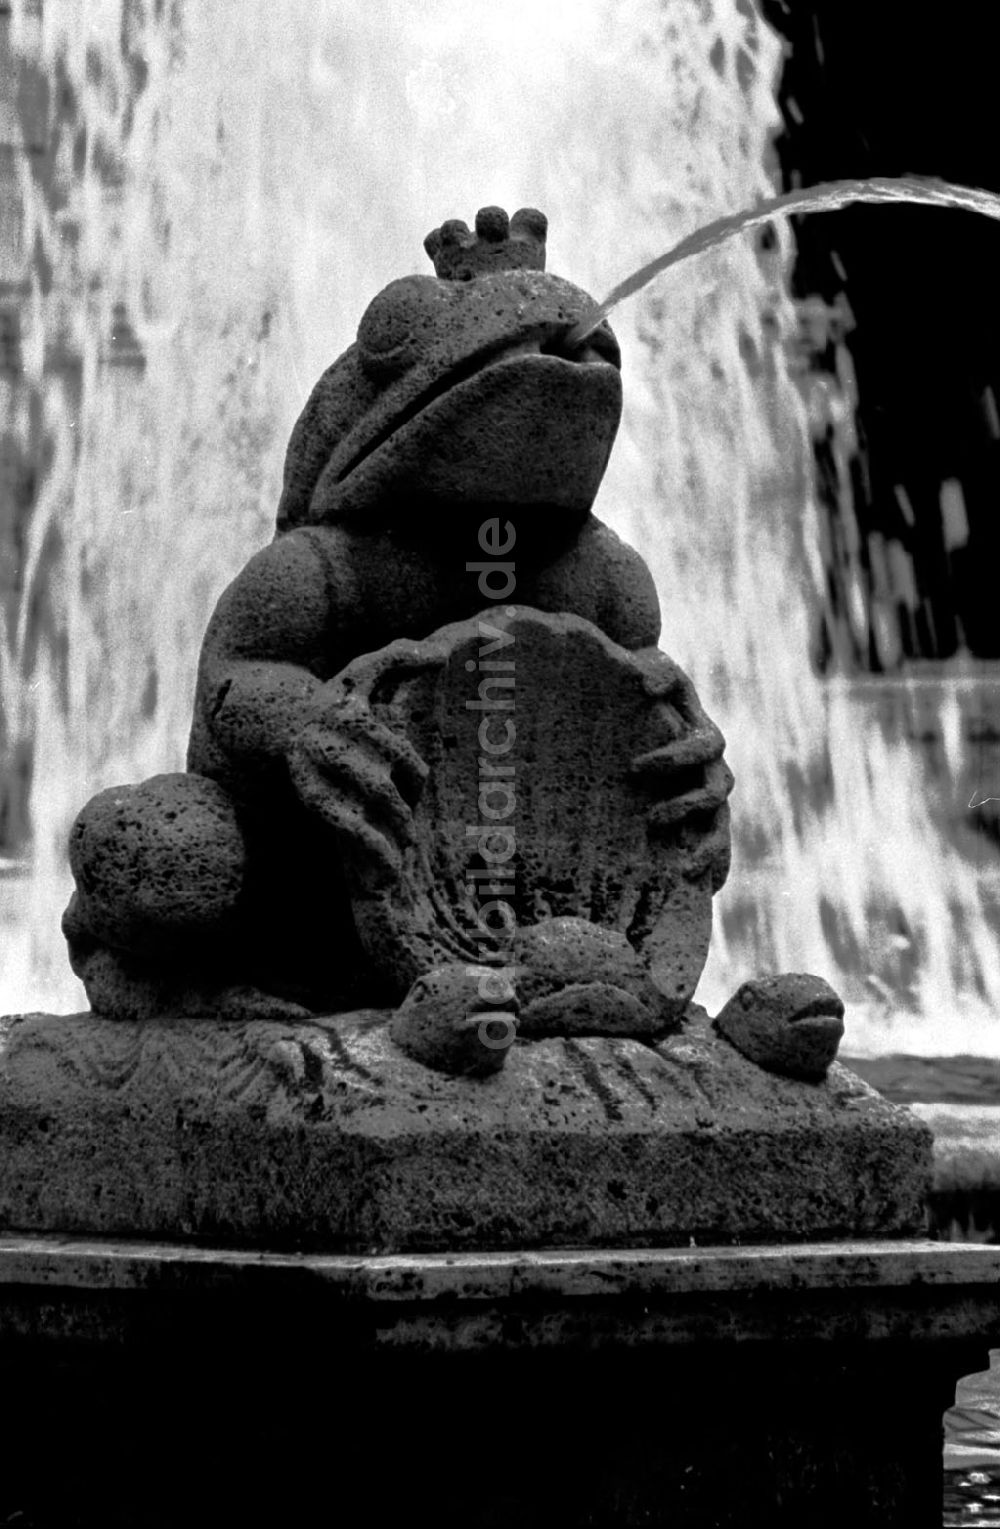 DDR-Bildarchiv: Berlin-Friedrichshain - versch. Motive vom Märchenbrunnen in Friedrichshain 6/1989 Foto:Grahn Umschlag 0736